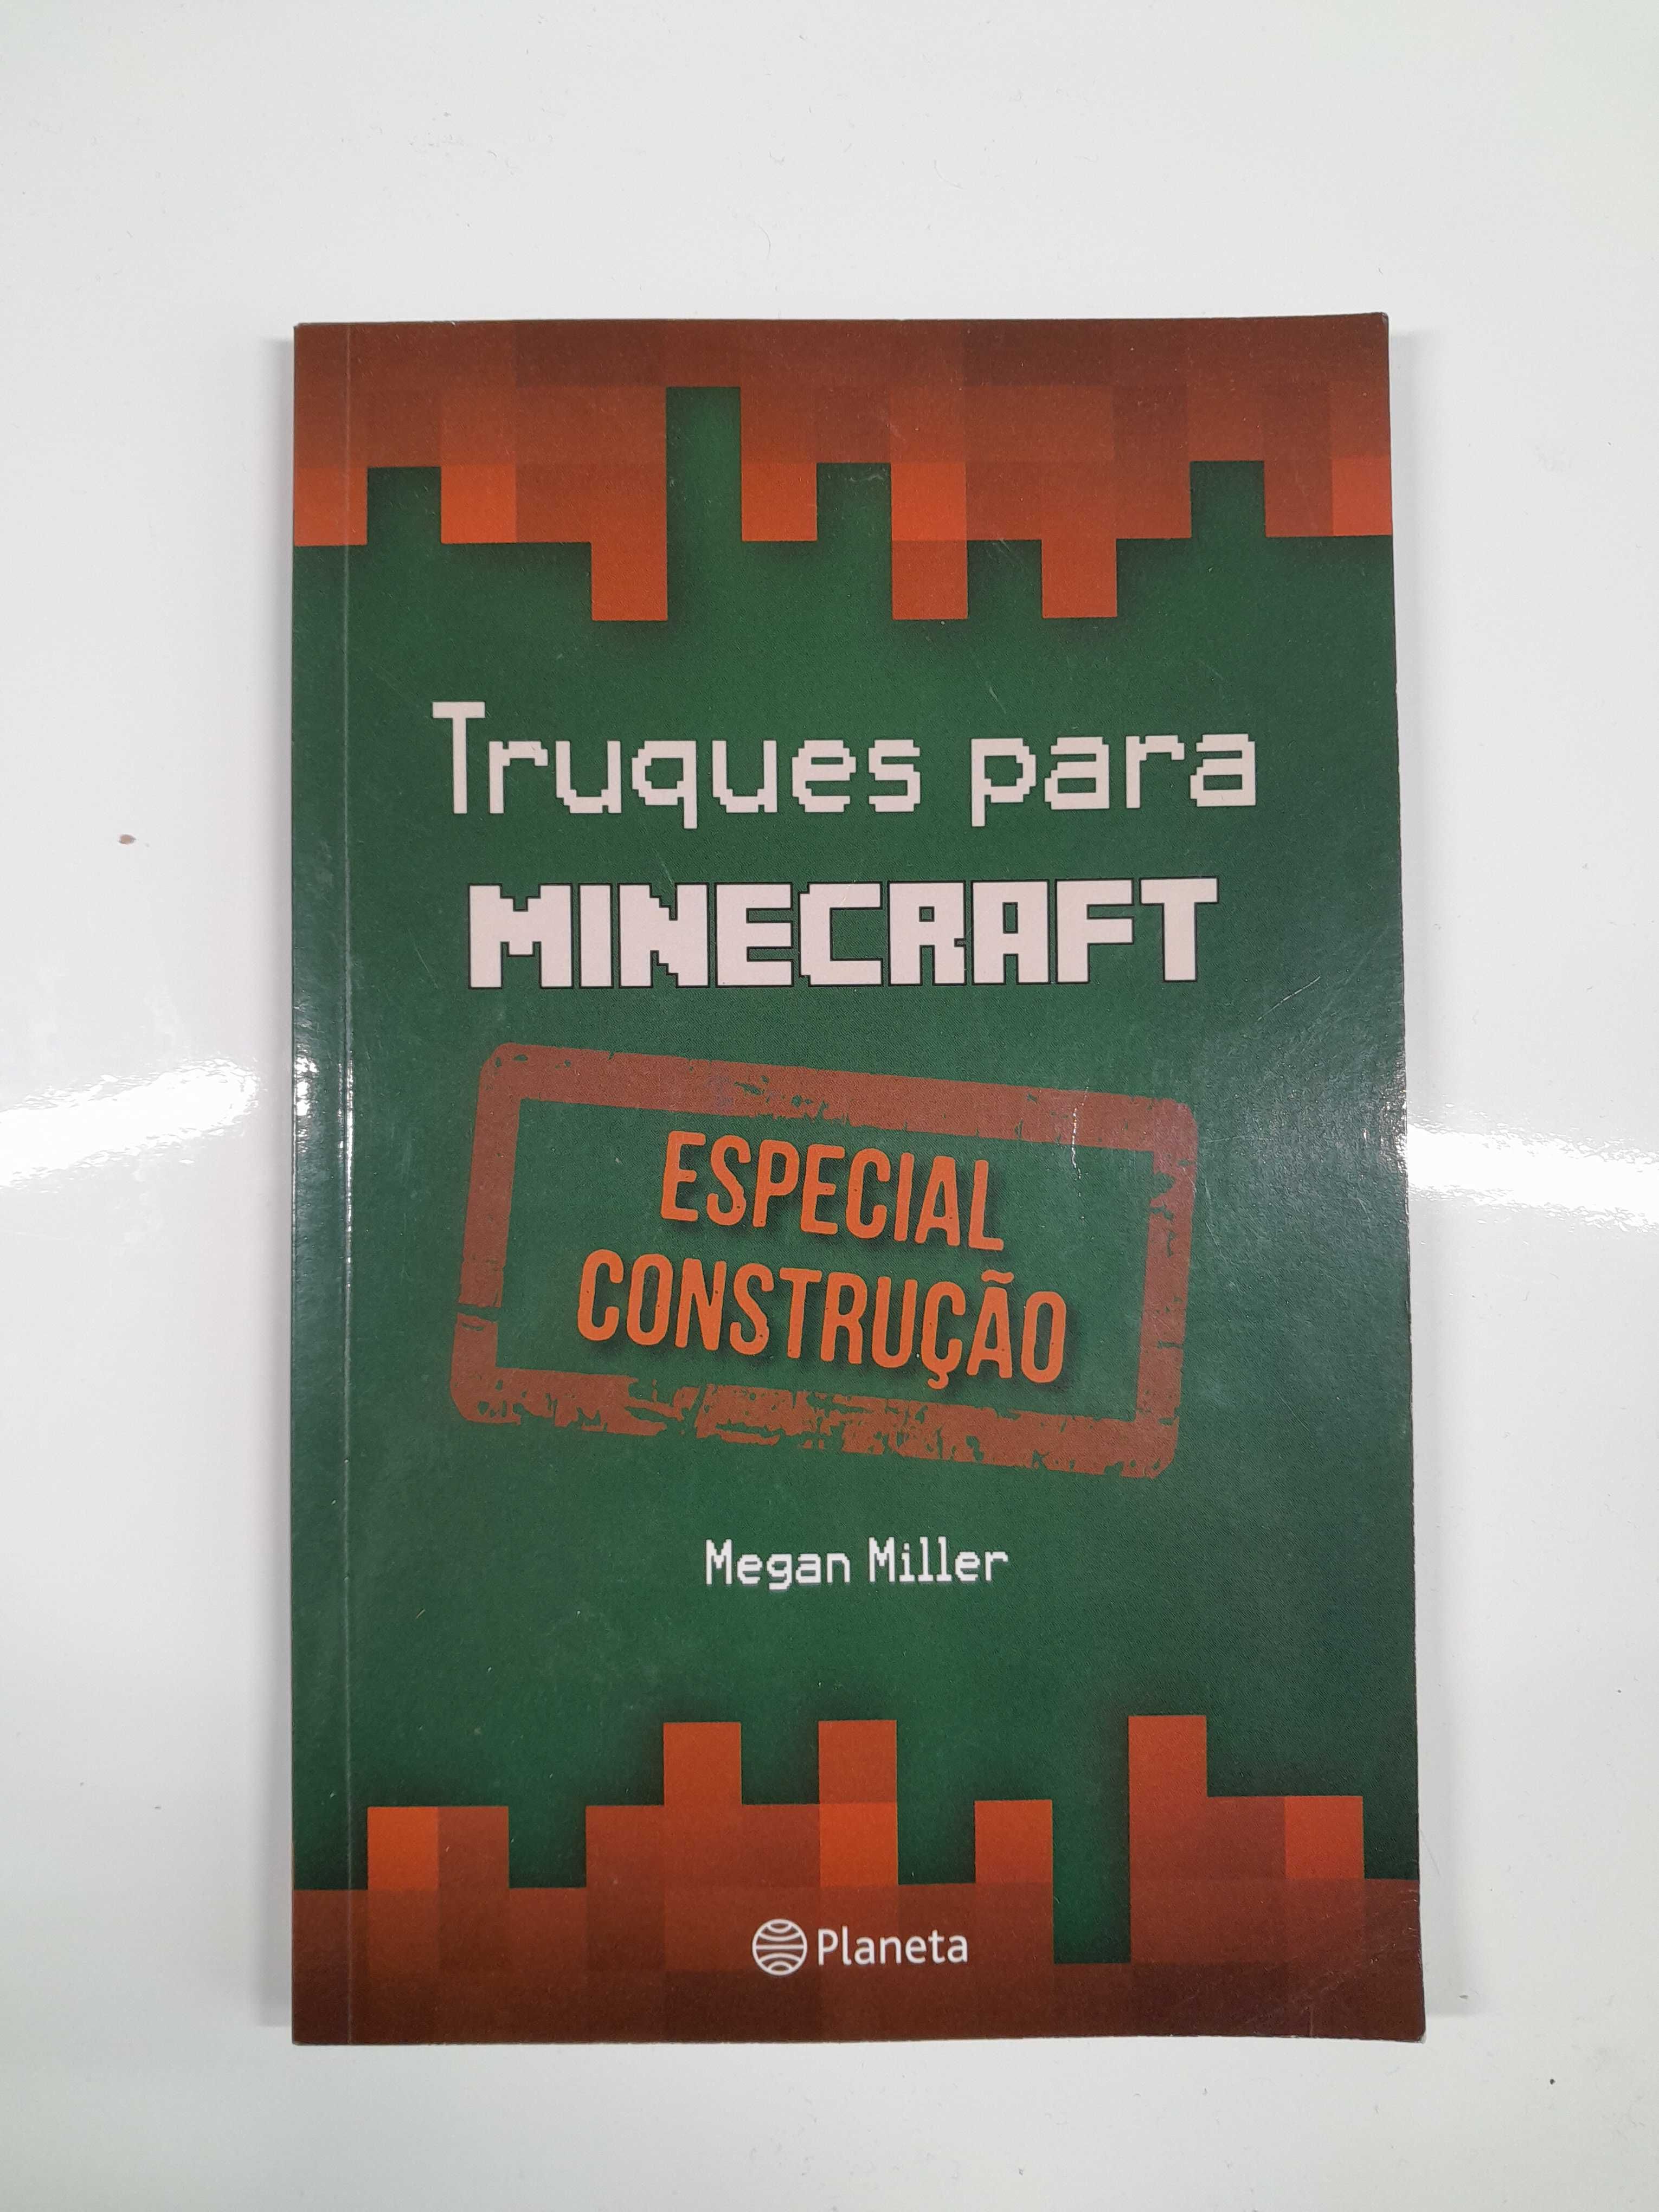 Truques para Minecraft (Especial Construção) - Megan Miller